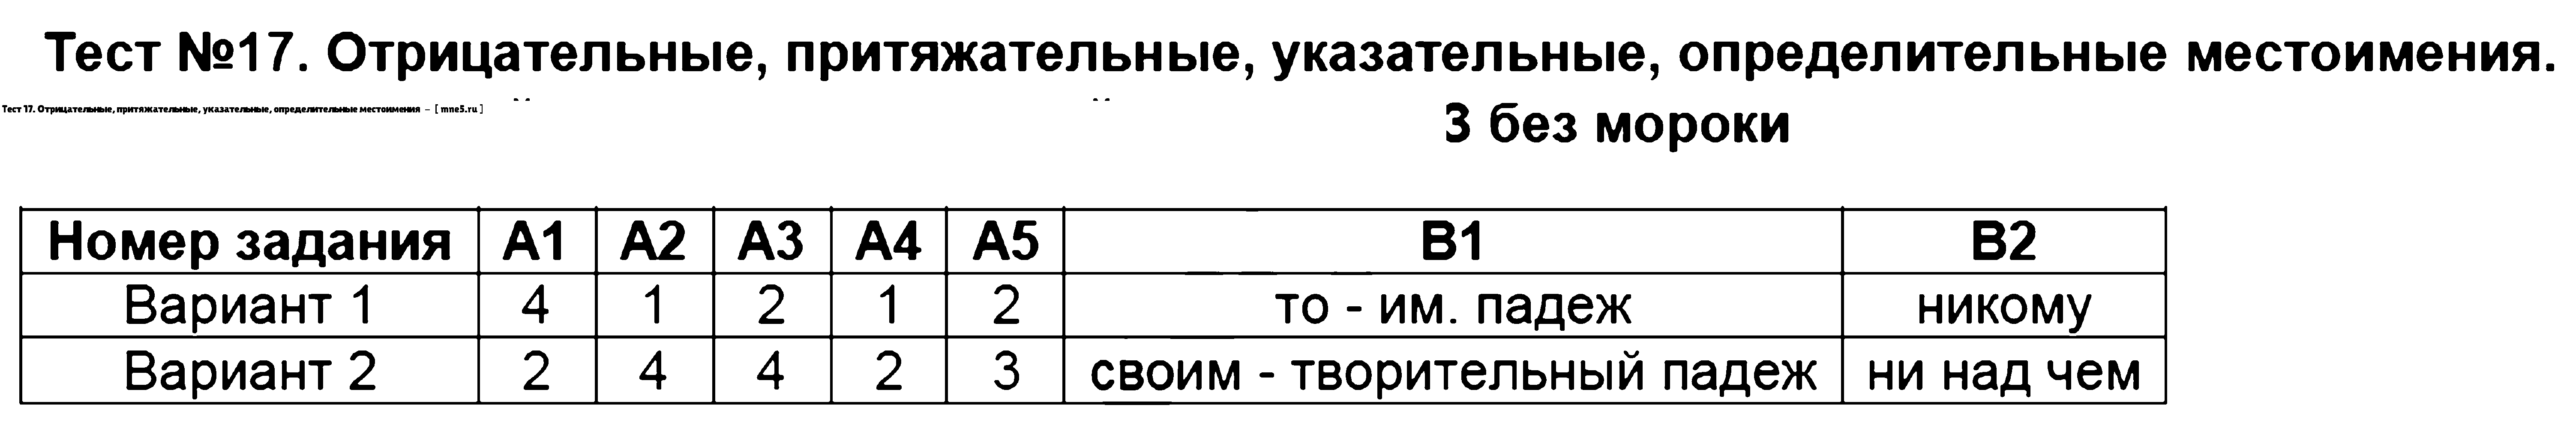 ГДЗ Русский язык 6 класс - Тест 17. Отрицательные, притяжательные, указательные, определительные местоимения